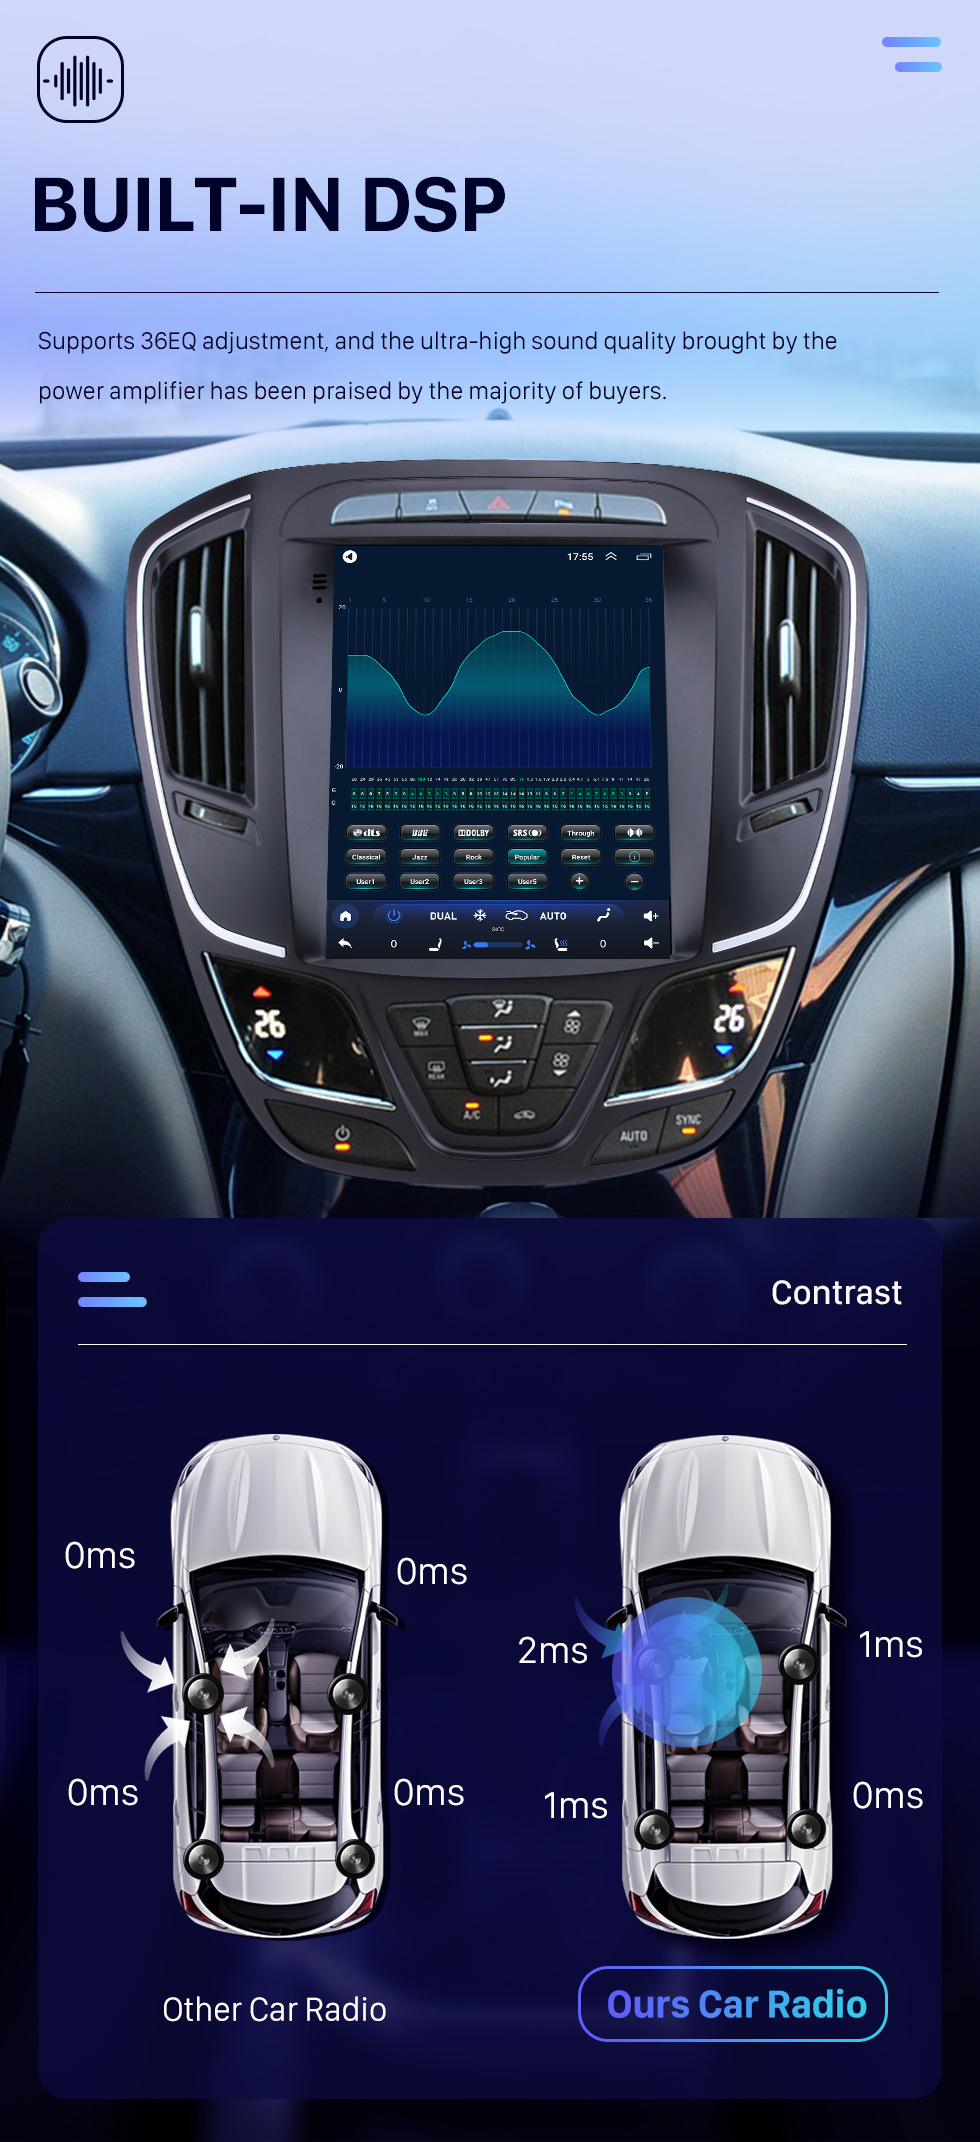 Seicane 9,7-дюймовый 2014 Buick Regal Android 10.0 Сенсорный экран Радио Система GPS-навигации Поддержка Зеркальная связь DVR USB 1080P Видео 4G WIFI Камера заднего вида Телевизор Управление на руле